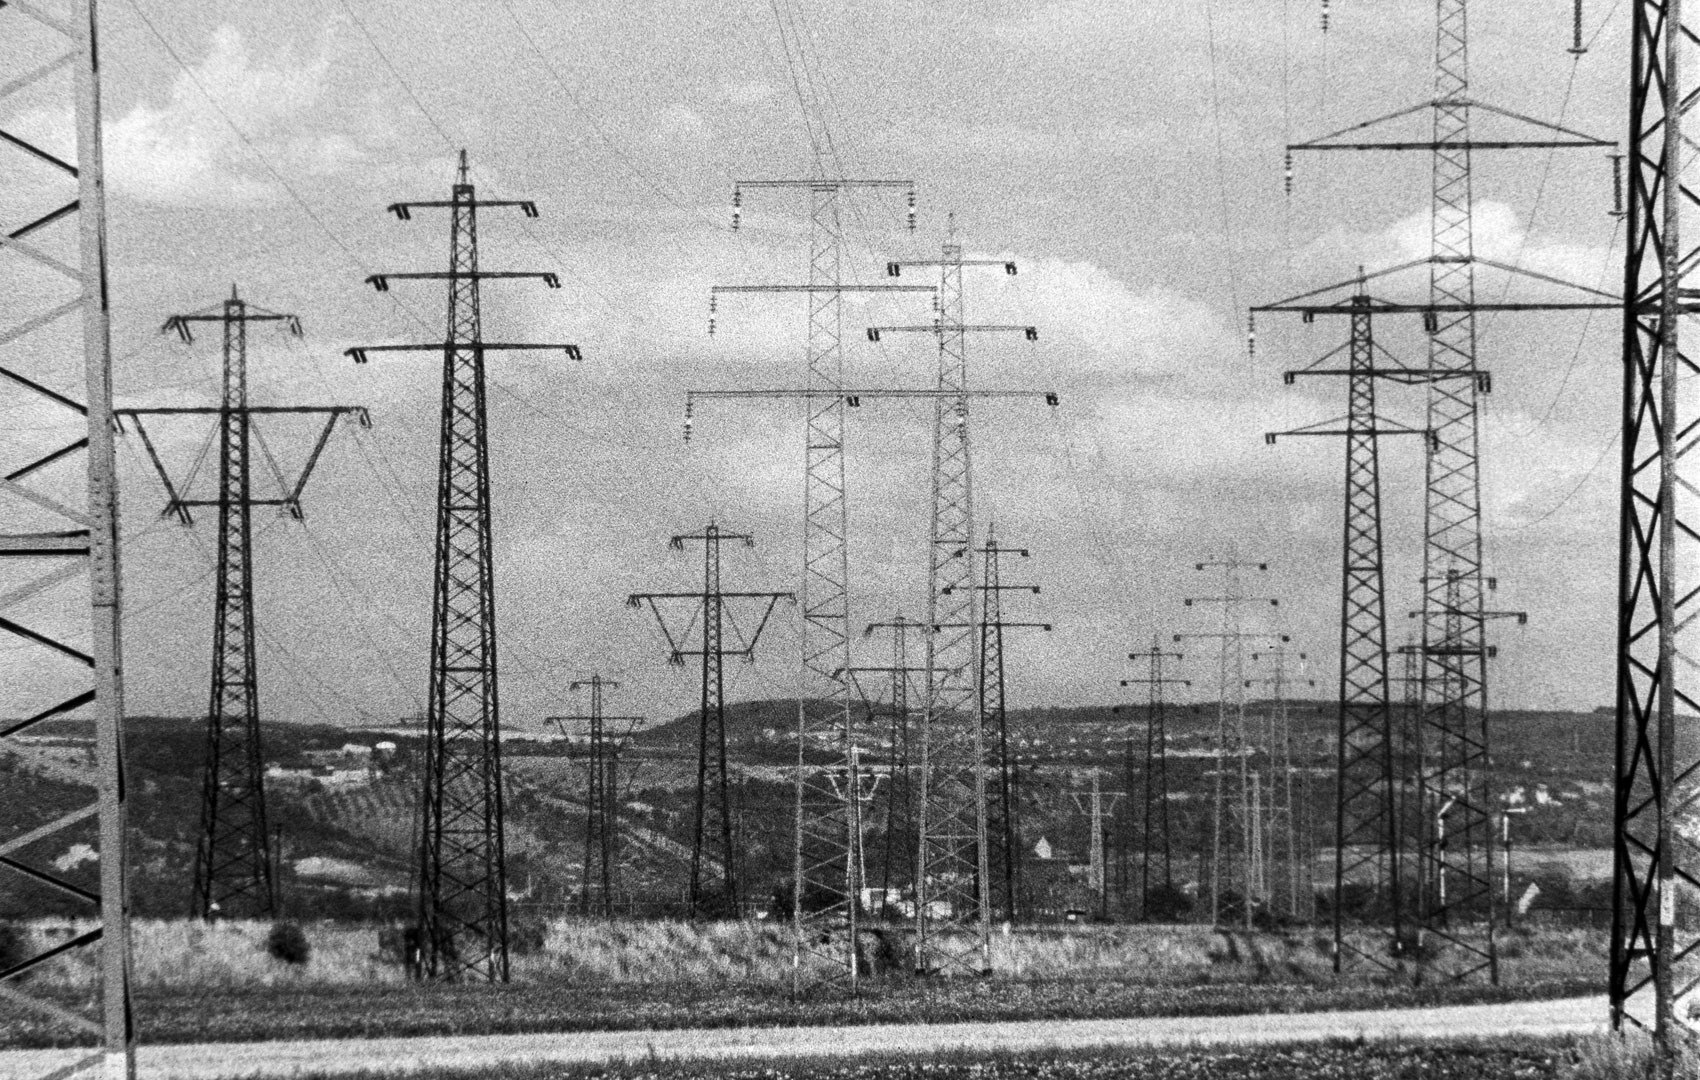 Schwarz-Weiß-Bild: Eine Landschaft voller Strommasten.